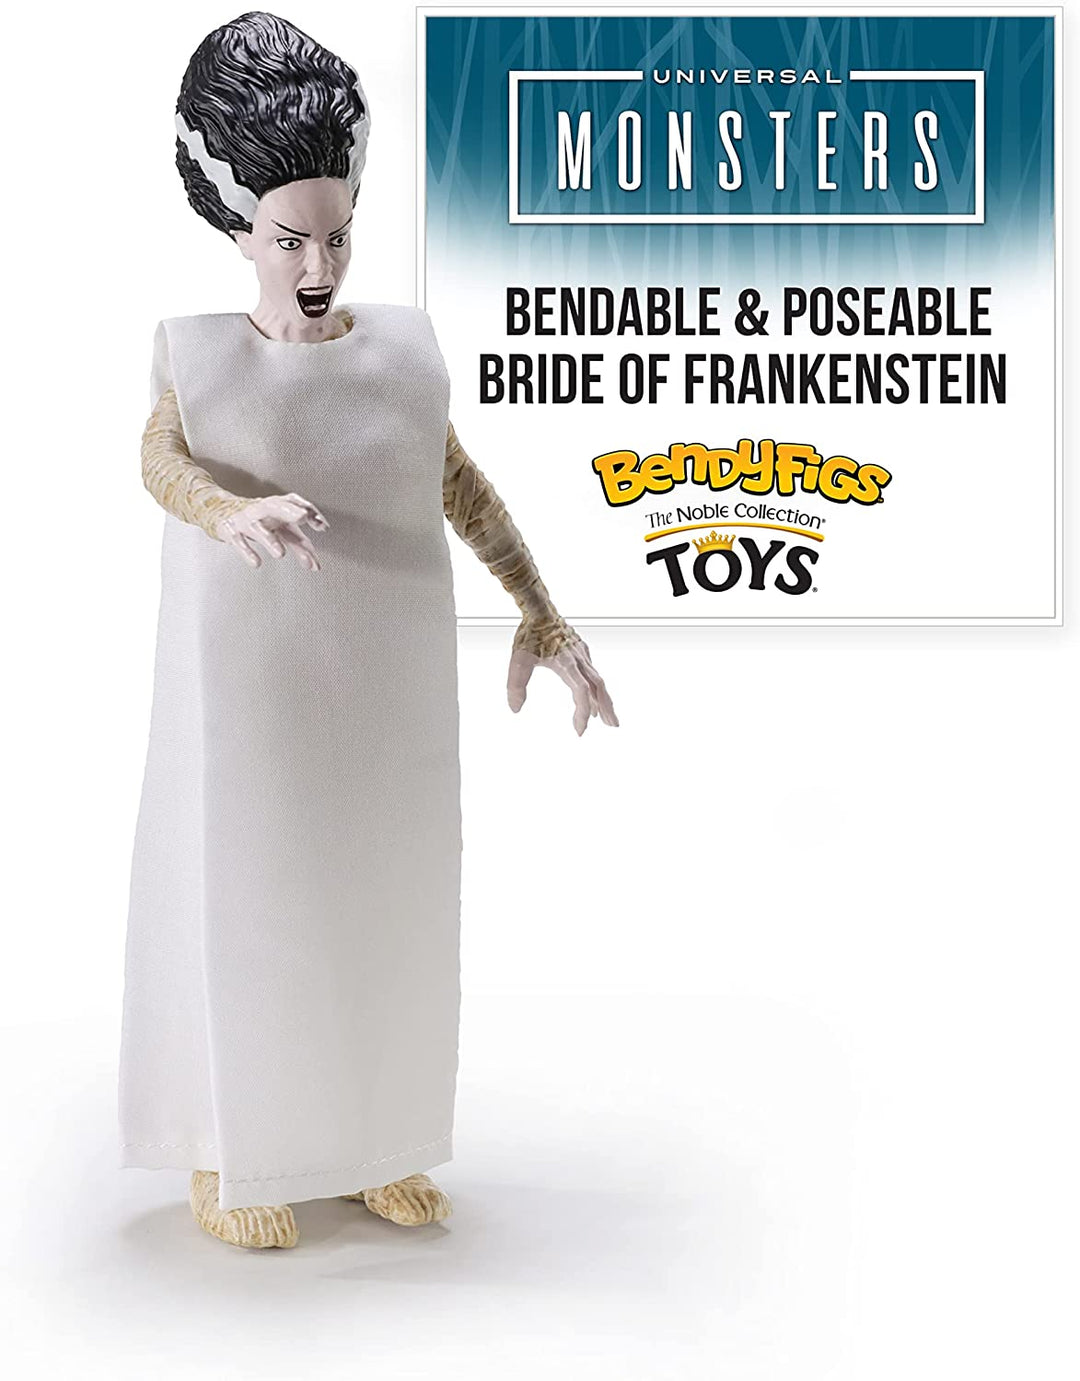 The Noble Collection Bendyfigs Bride Of Frankenstein, offiziell lizenzierte, 19 cm große, biegsame, bewegliche Puppenfiguren zum Sammeln mit Ständer – für Kinder und Erwachsene